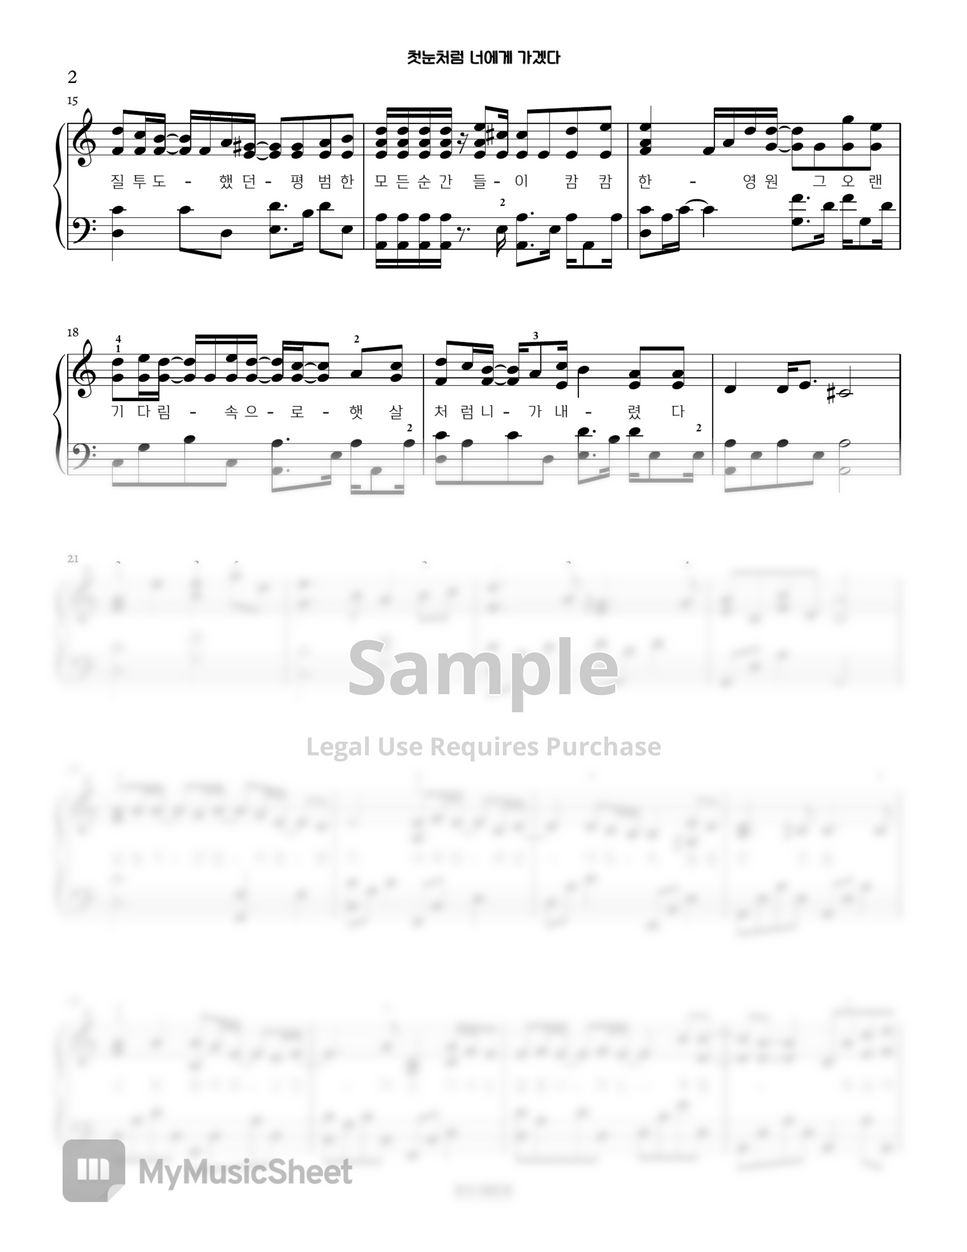 에일리(Ailee) - 첫눈처럼 너에게 가겠다 (쓸쓸하고 찬란하神-도깨비) | Piano Arrangement in C major (OST) by PianoSSam